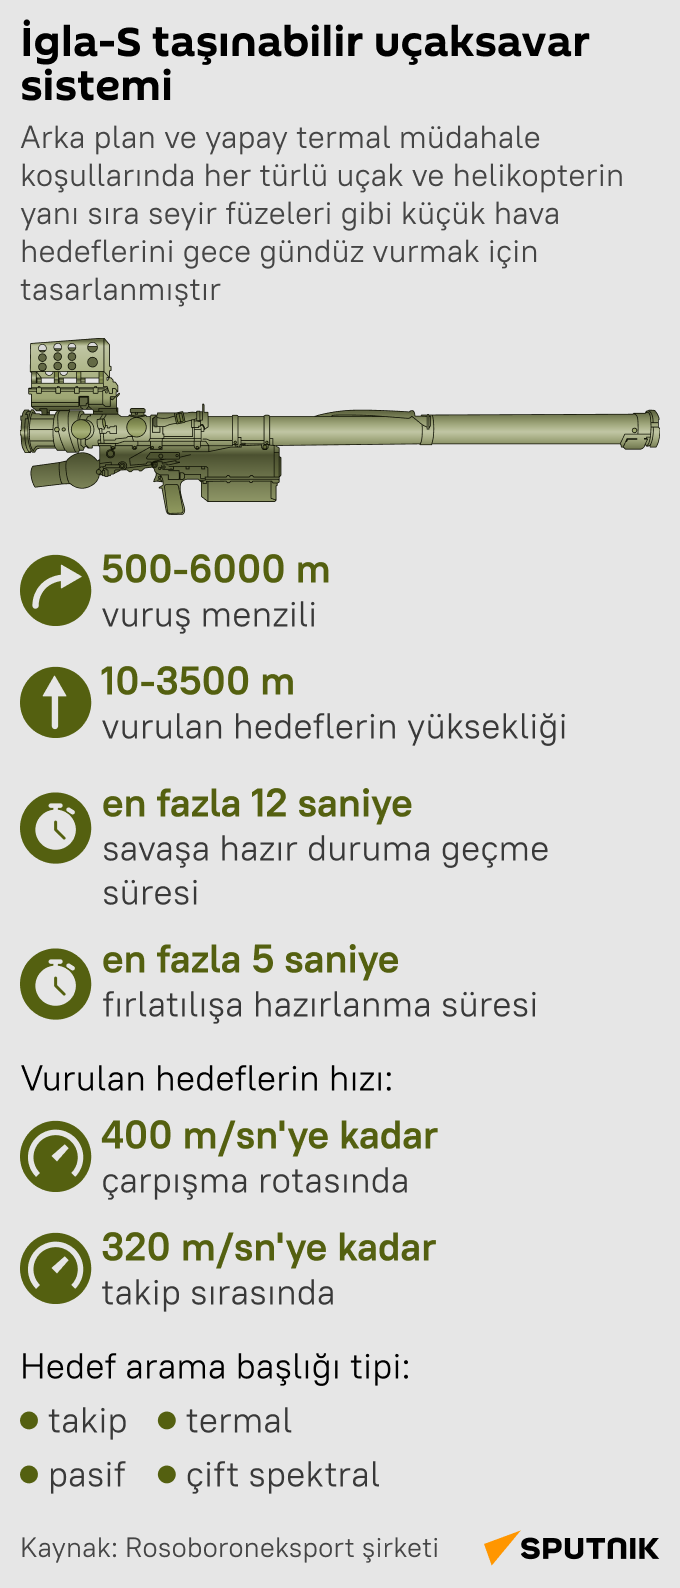  Rus İgla-S taşınabilir uçaksavar sisteminin teknik özelikleri nedir? infografik - Sputnik Türkiye